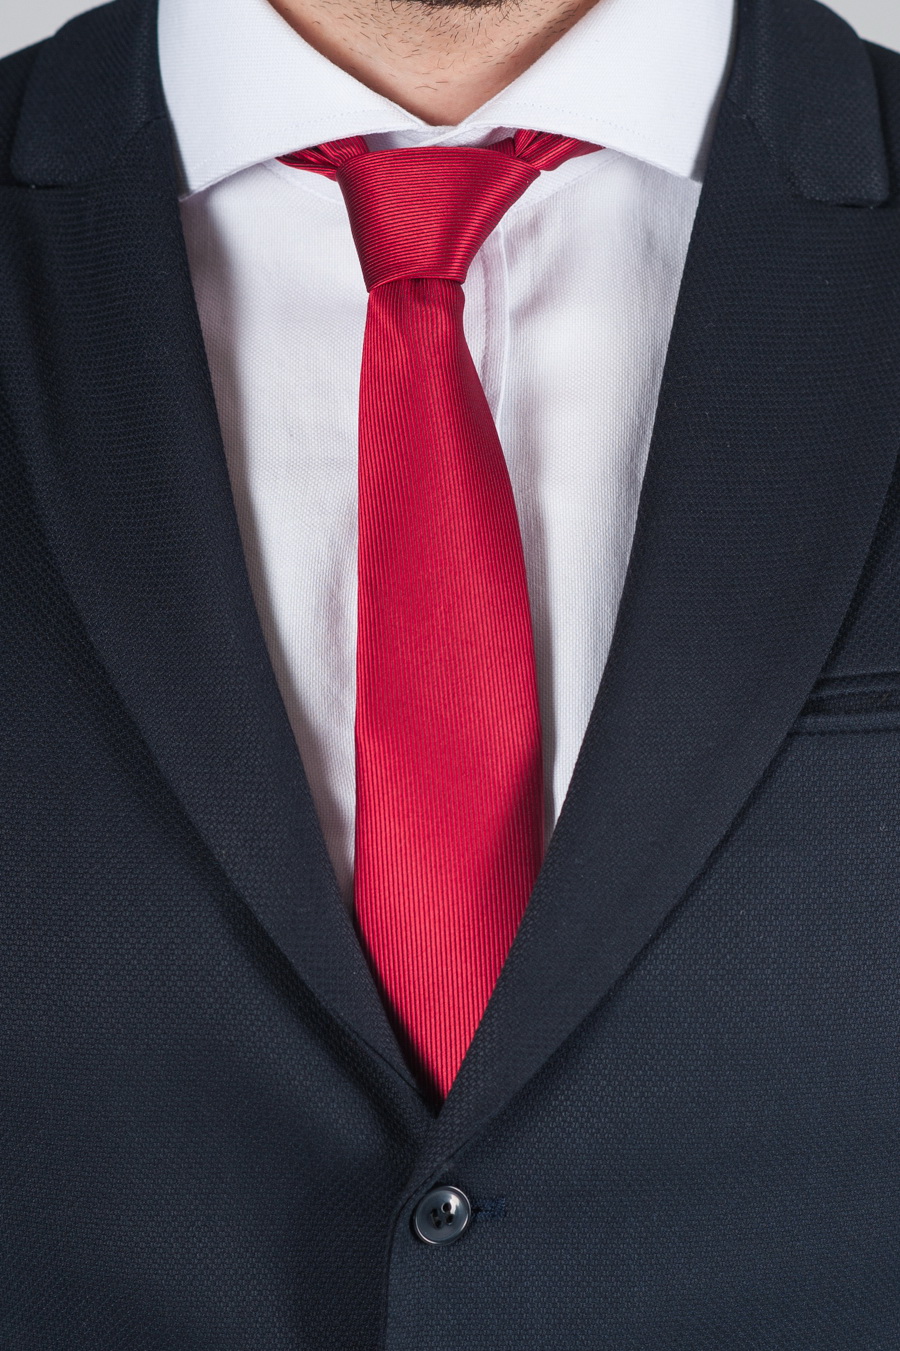 Зауженный красный галстук. Арт.:10-54